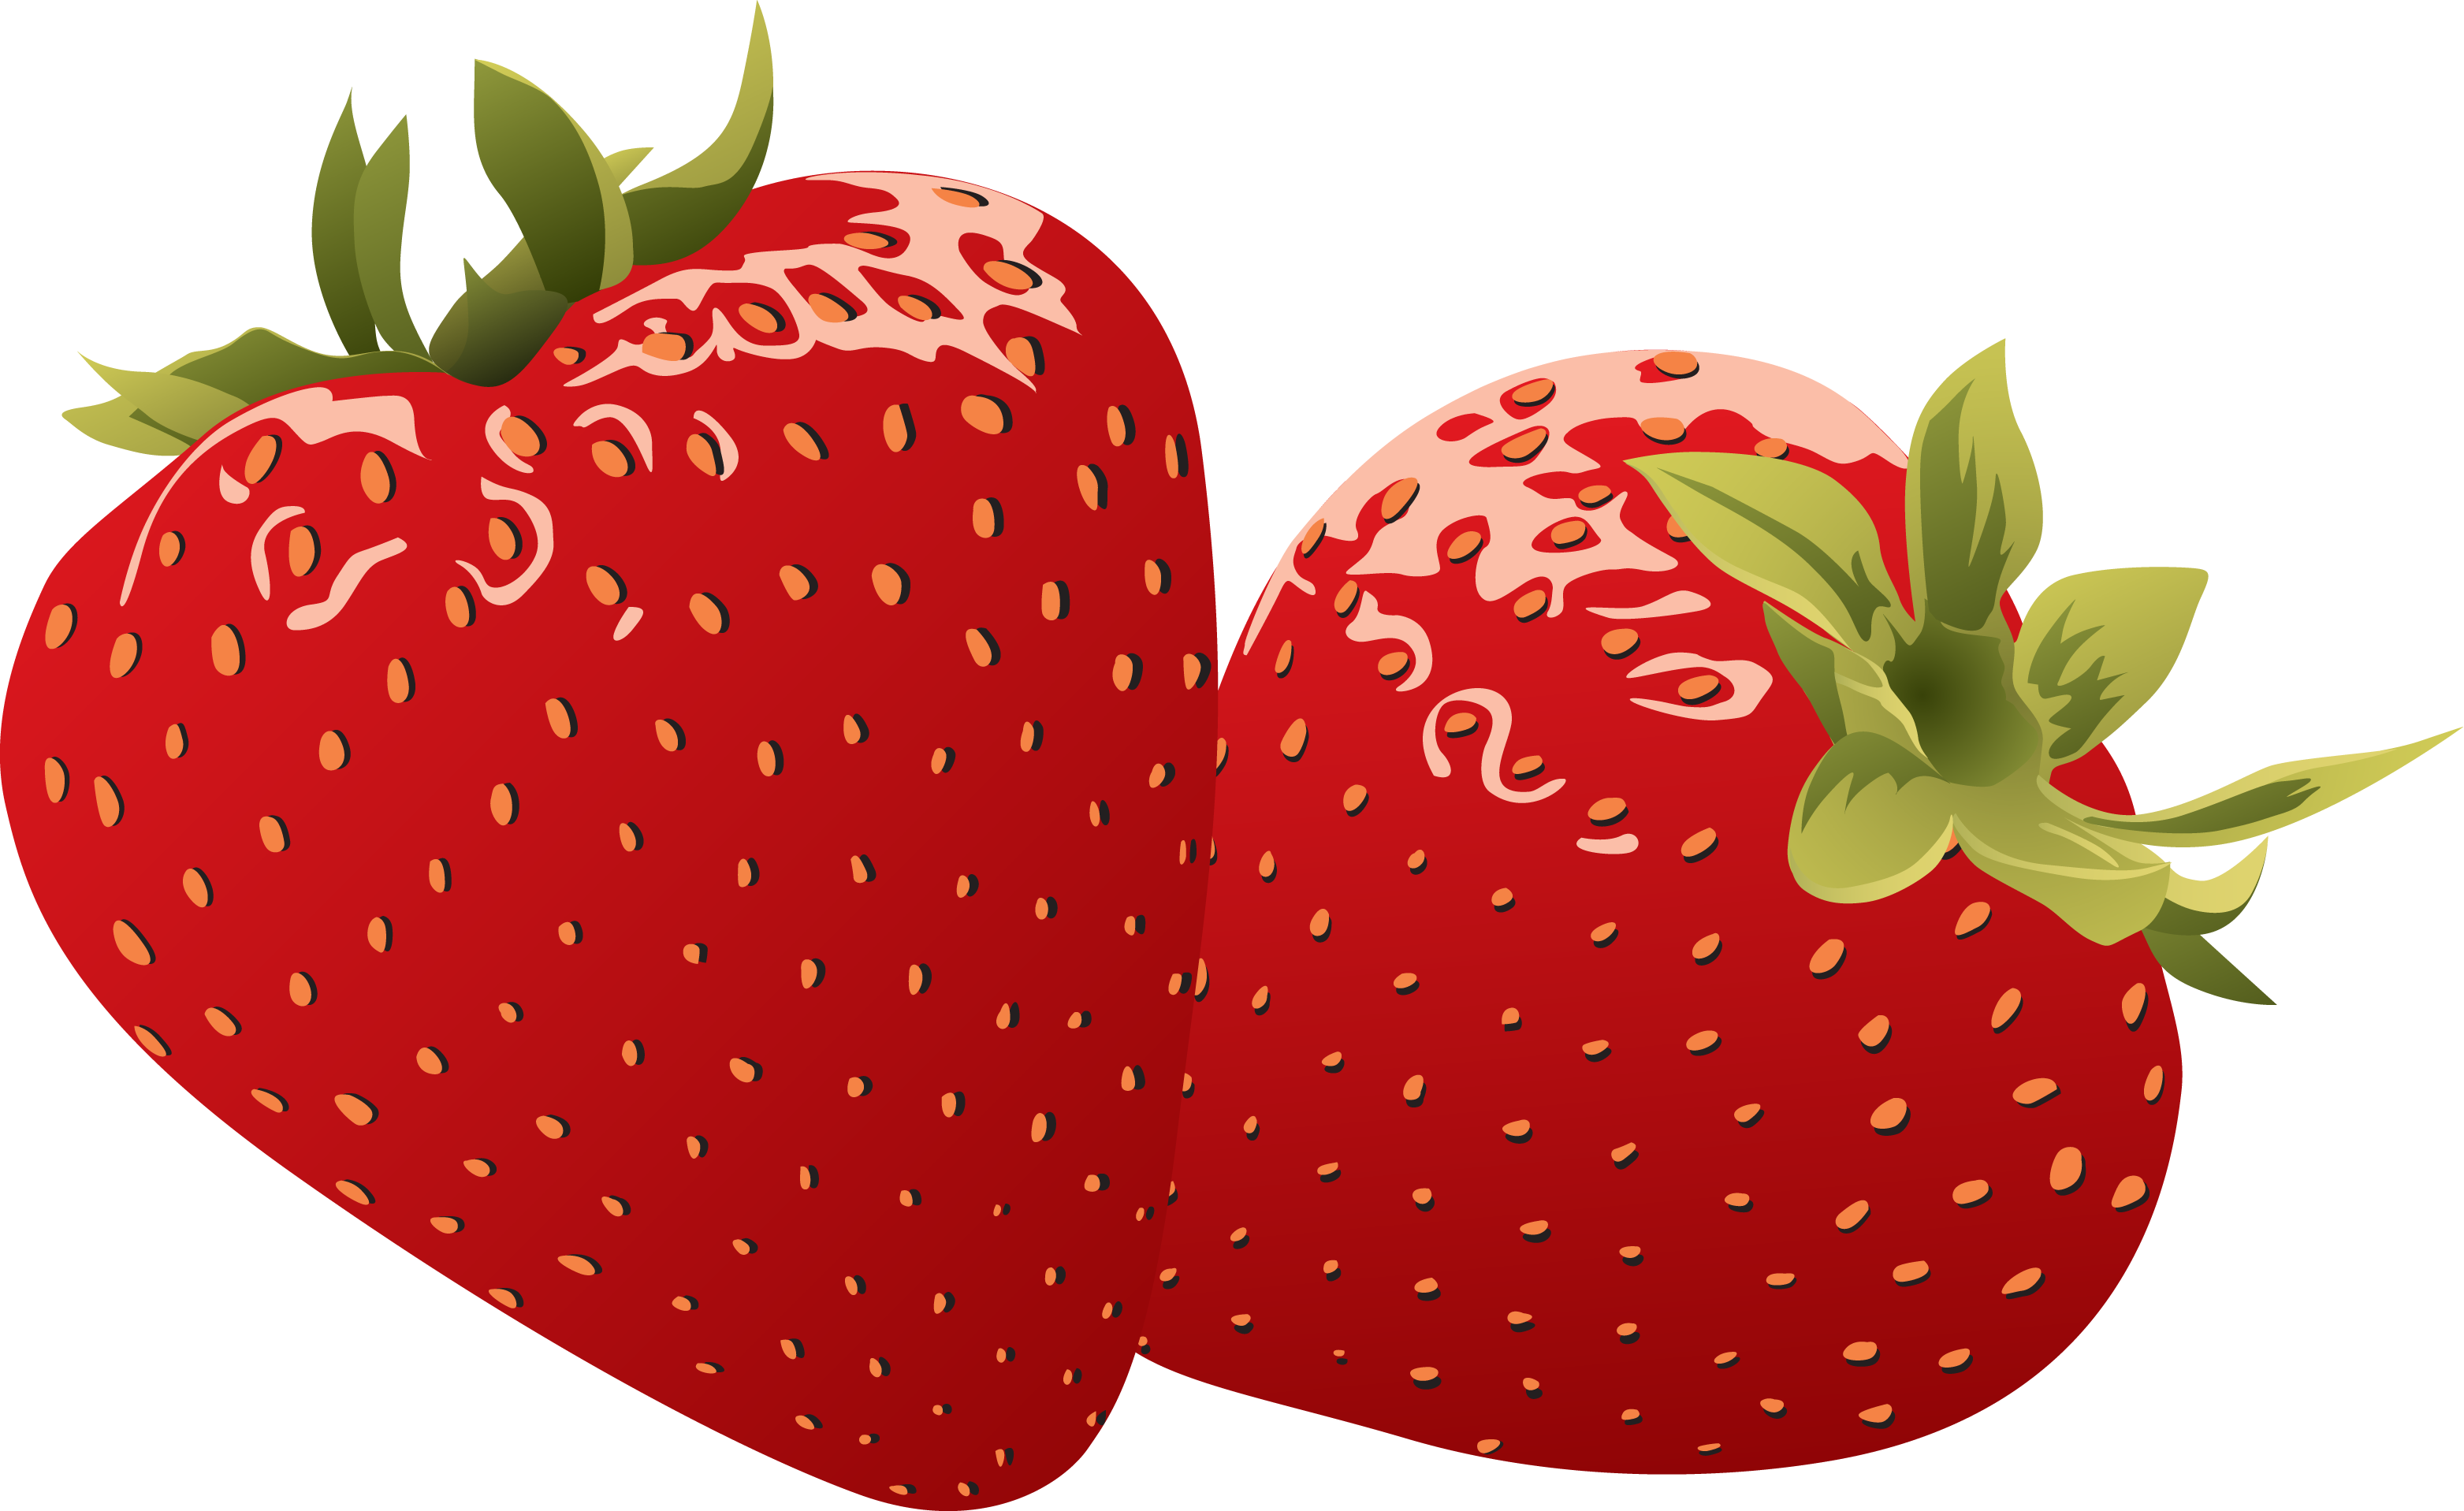 Strawberry clip art clip art 